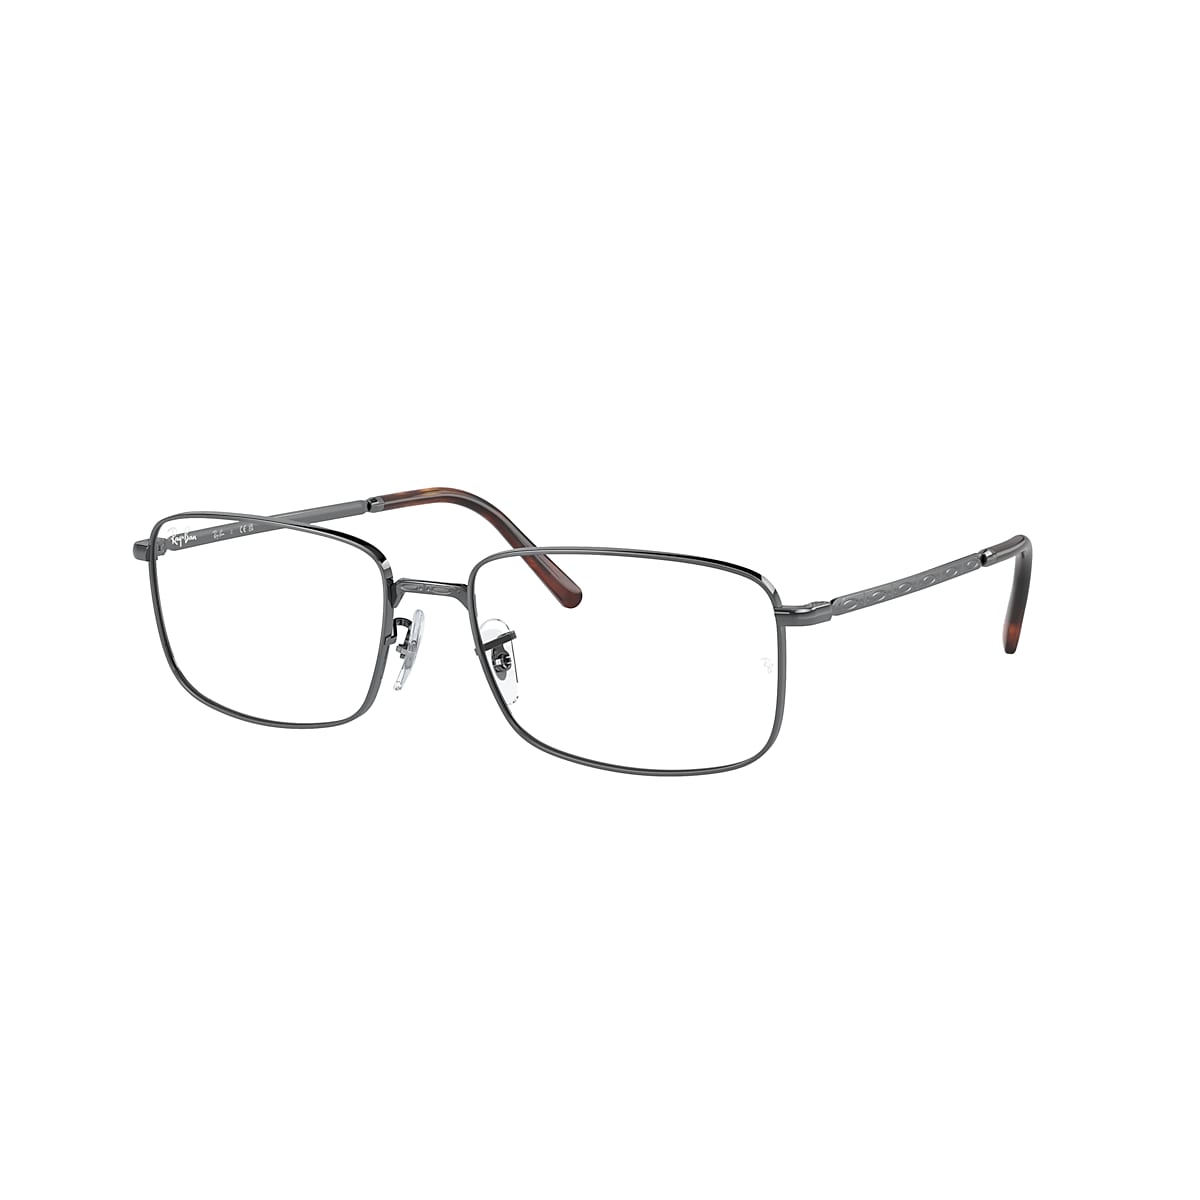 RB3717 OPTICS Eyeglasses with Gunmetal Frame - Ray-Ban